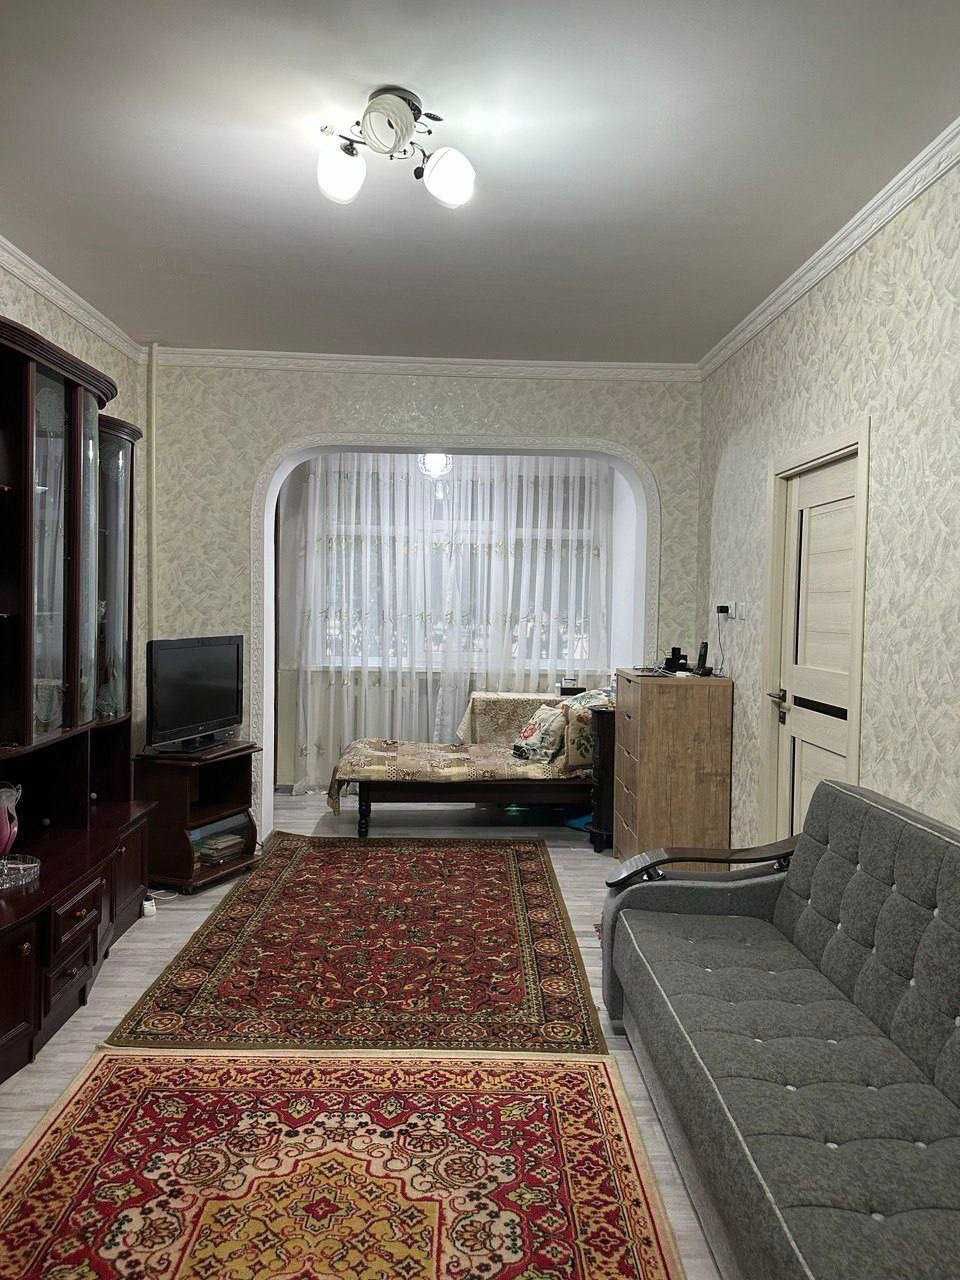 Продается квартира в Мирзо-Улугбекском районе